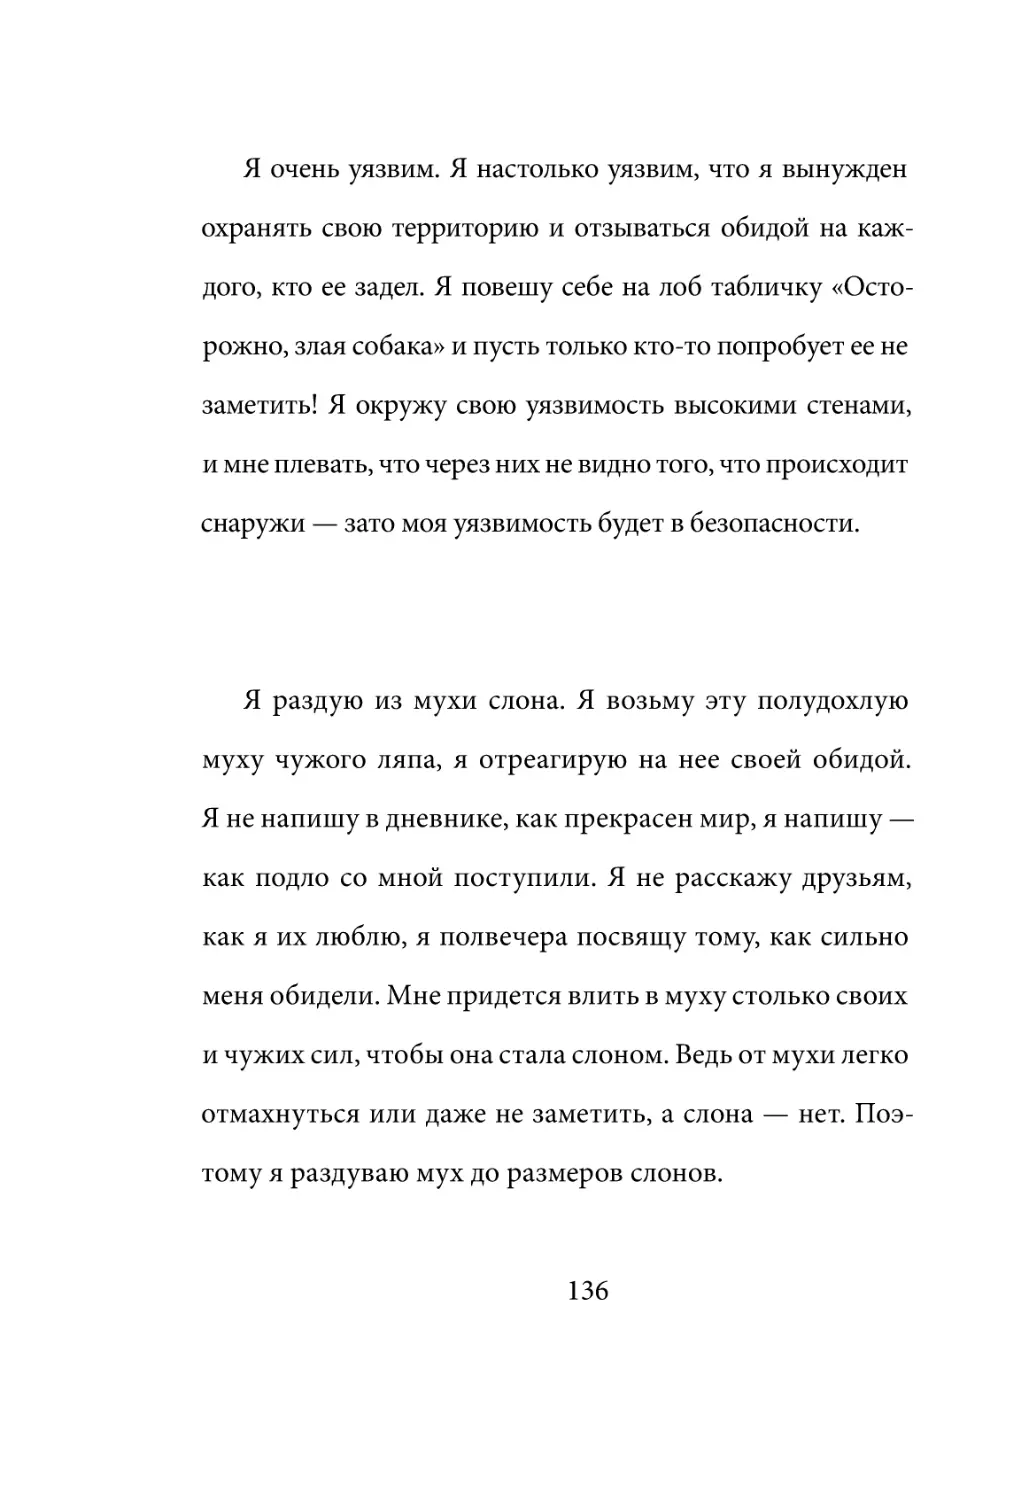 Sergey_Filippov_Dnevnik_samorazvitia_Evolyutsia_Vnutrennego_Sostoyania_136.pdf (p.136)